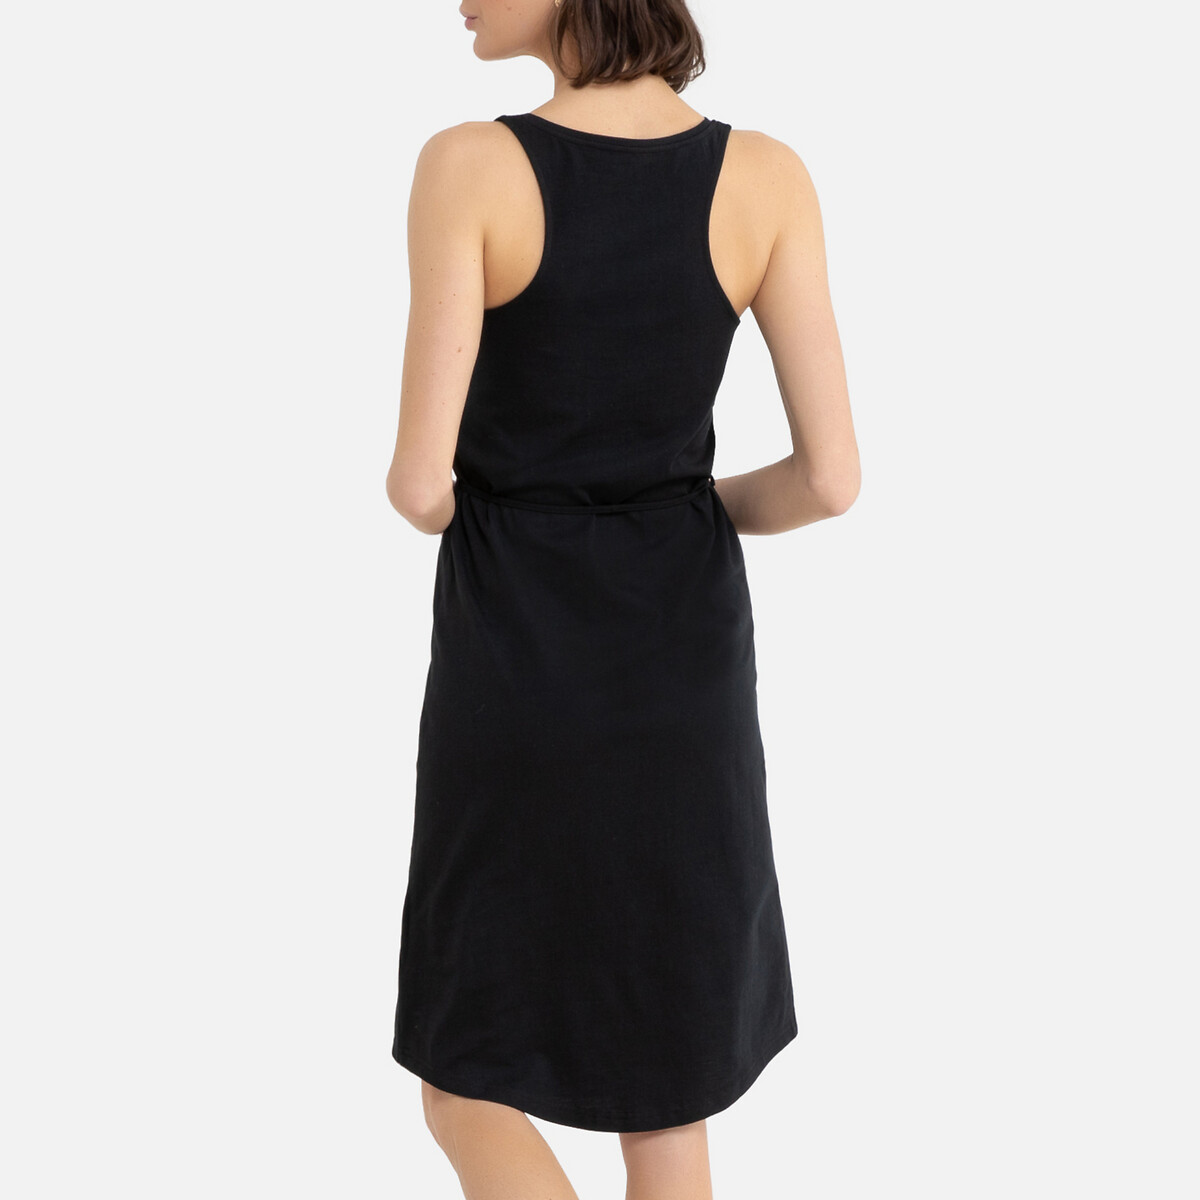 Платье La Redoute Без рукавов из трикотажа M черный, размер M - фото 4